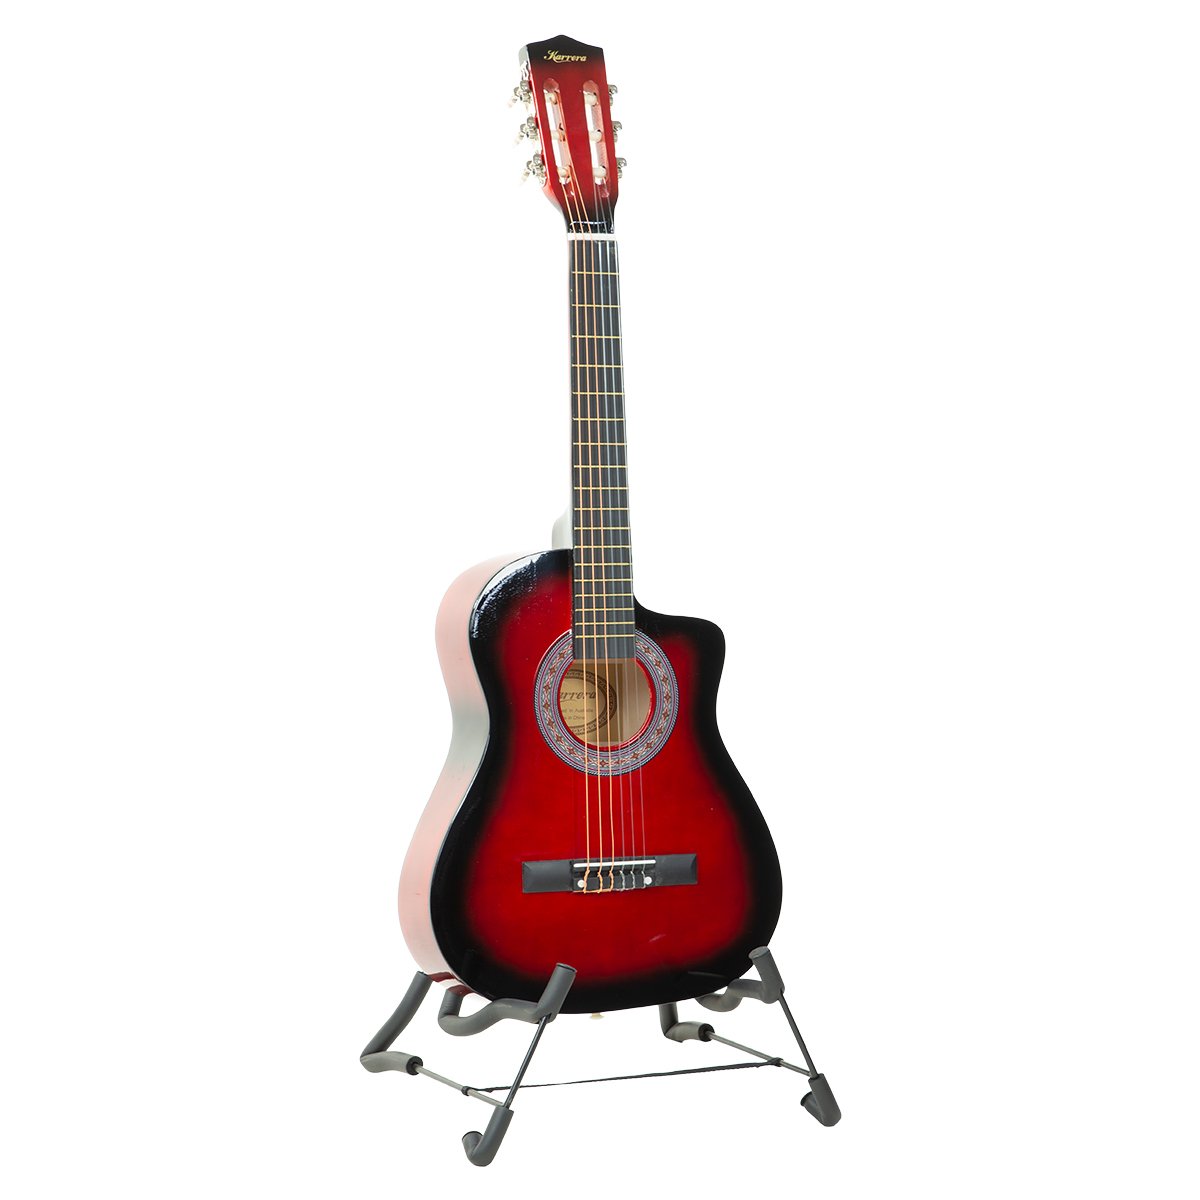 Karrera 38in Pro Cutaway Acoustic Guitar with guitar bag - Red Burst 1